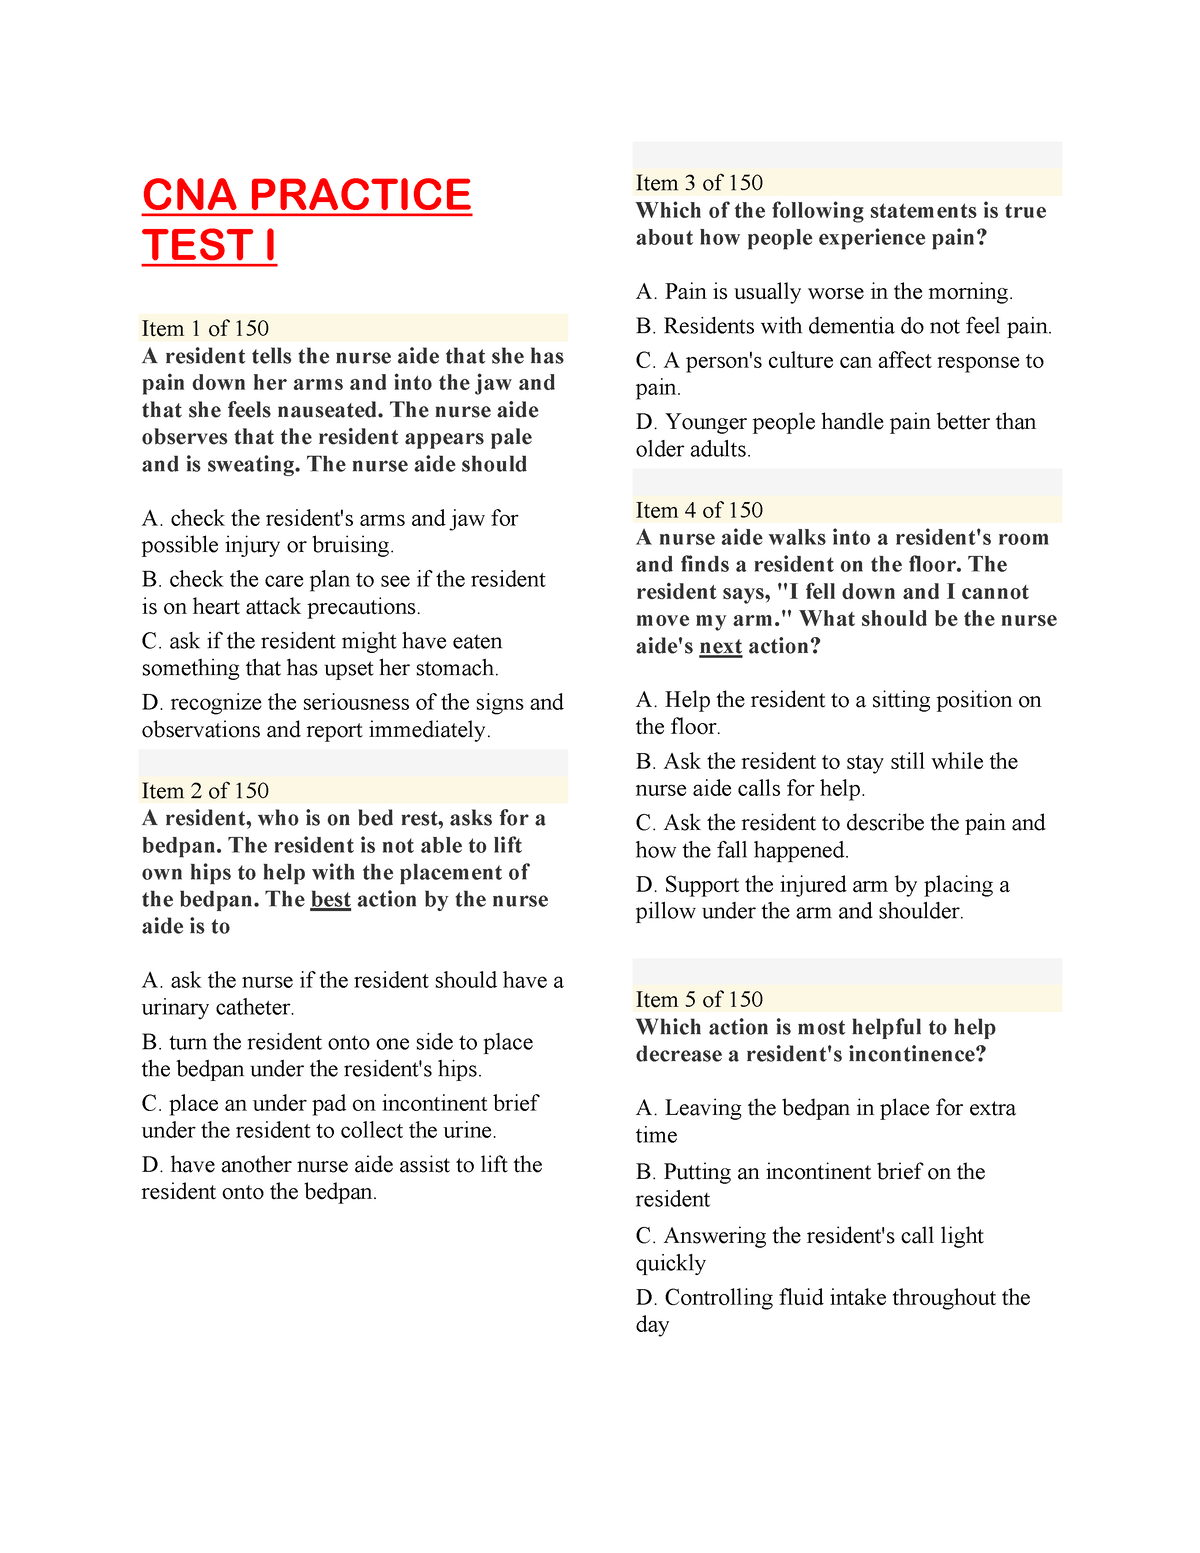 practice cna test questions quizlet